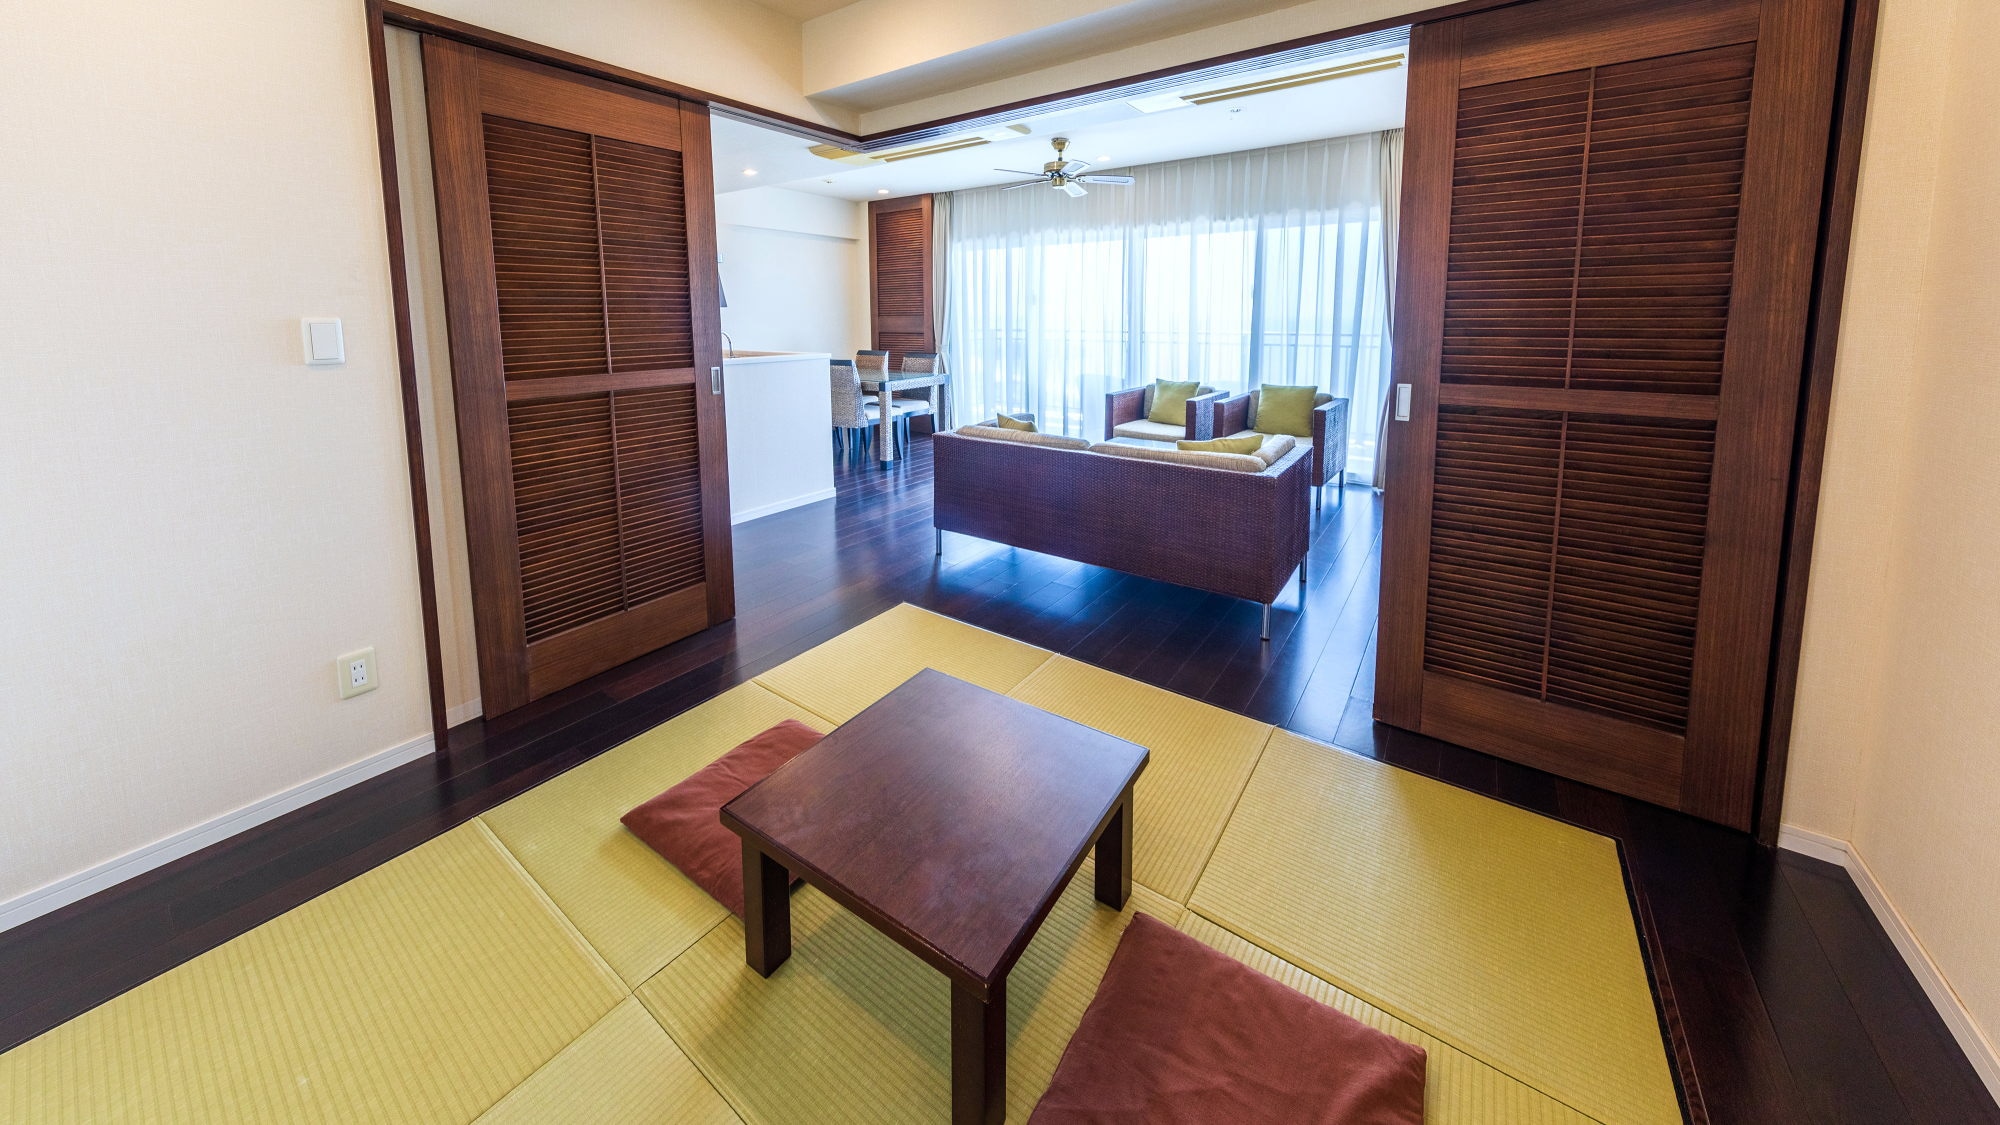 ■ Contoh suite gaya Jepang-Barat (61-71 meter persegi) di gedung kondominium